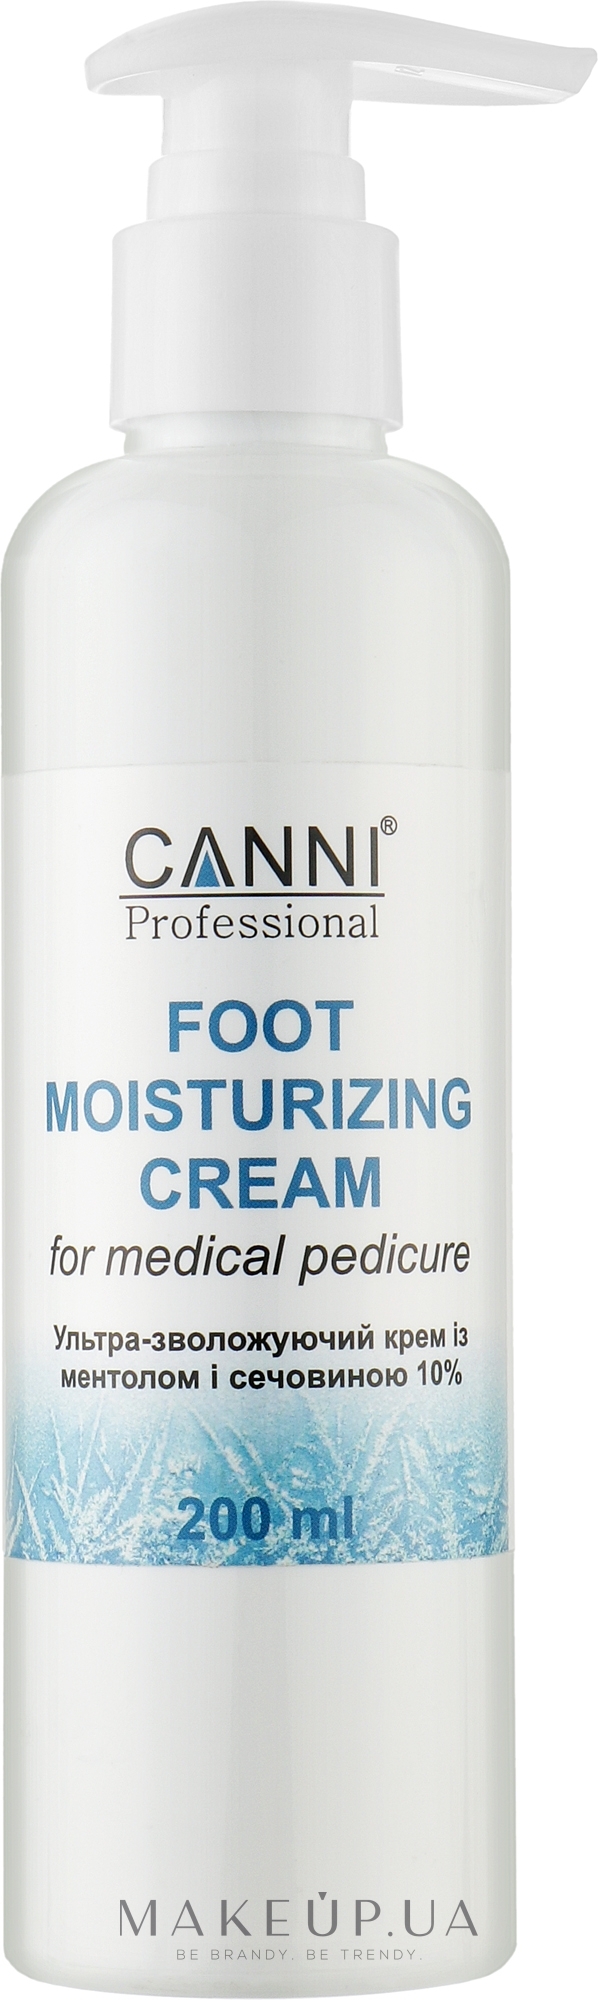 Крем для ног с ментолом и мочевиной 10% - Canni Foot Moisturizing Cream  — фото 200ml